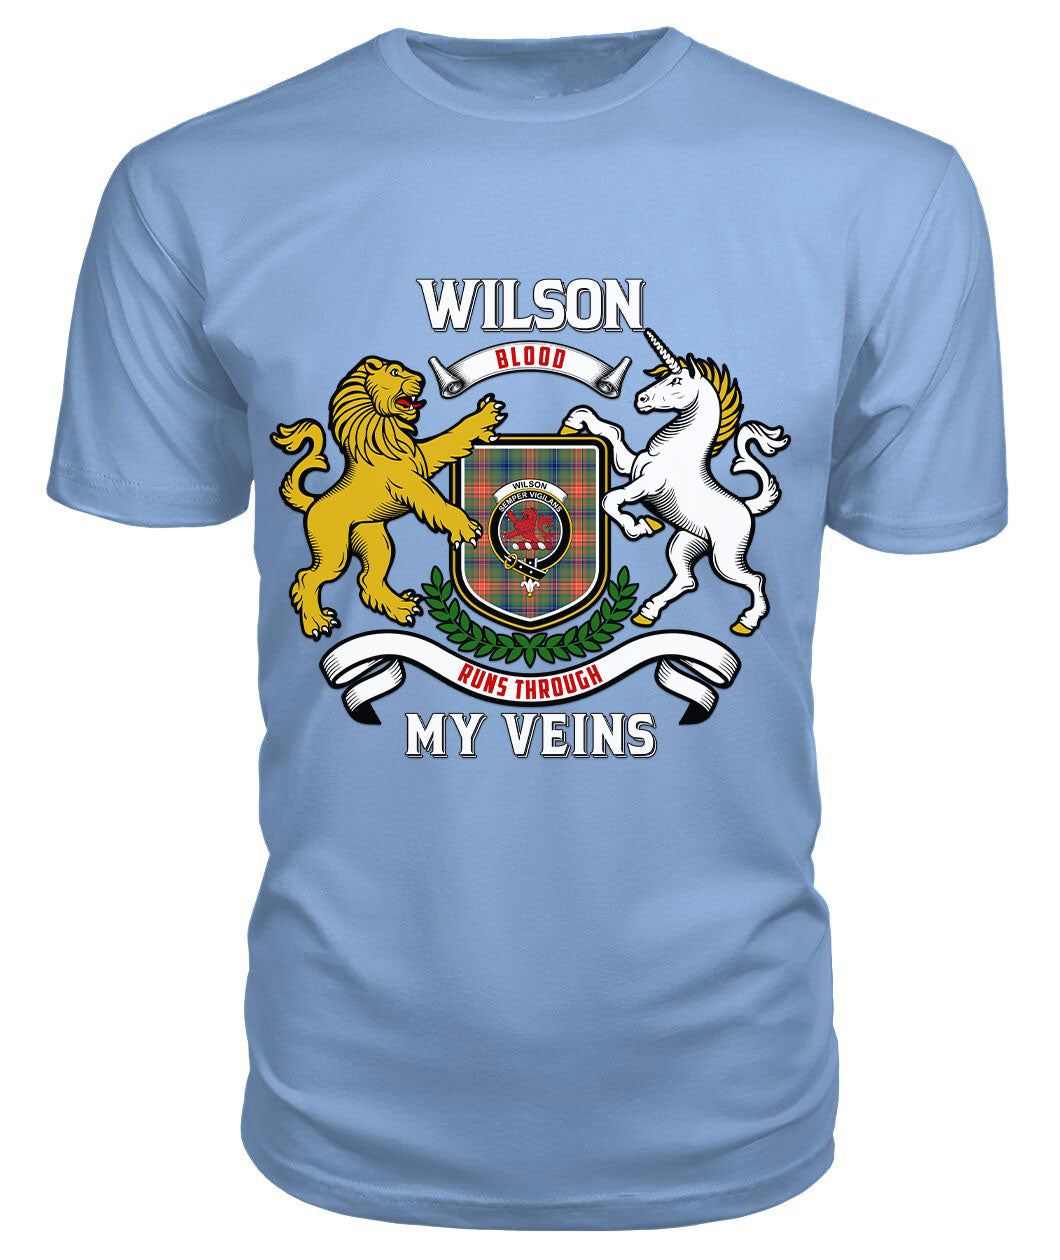 Wilson Ancient Tartan Crest 2D T-shirt - Blood Runs Through My Veins Style